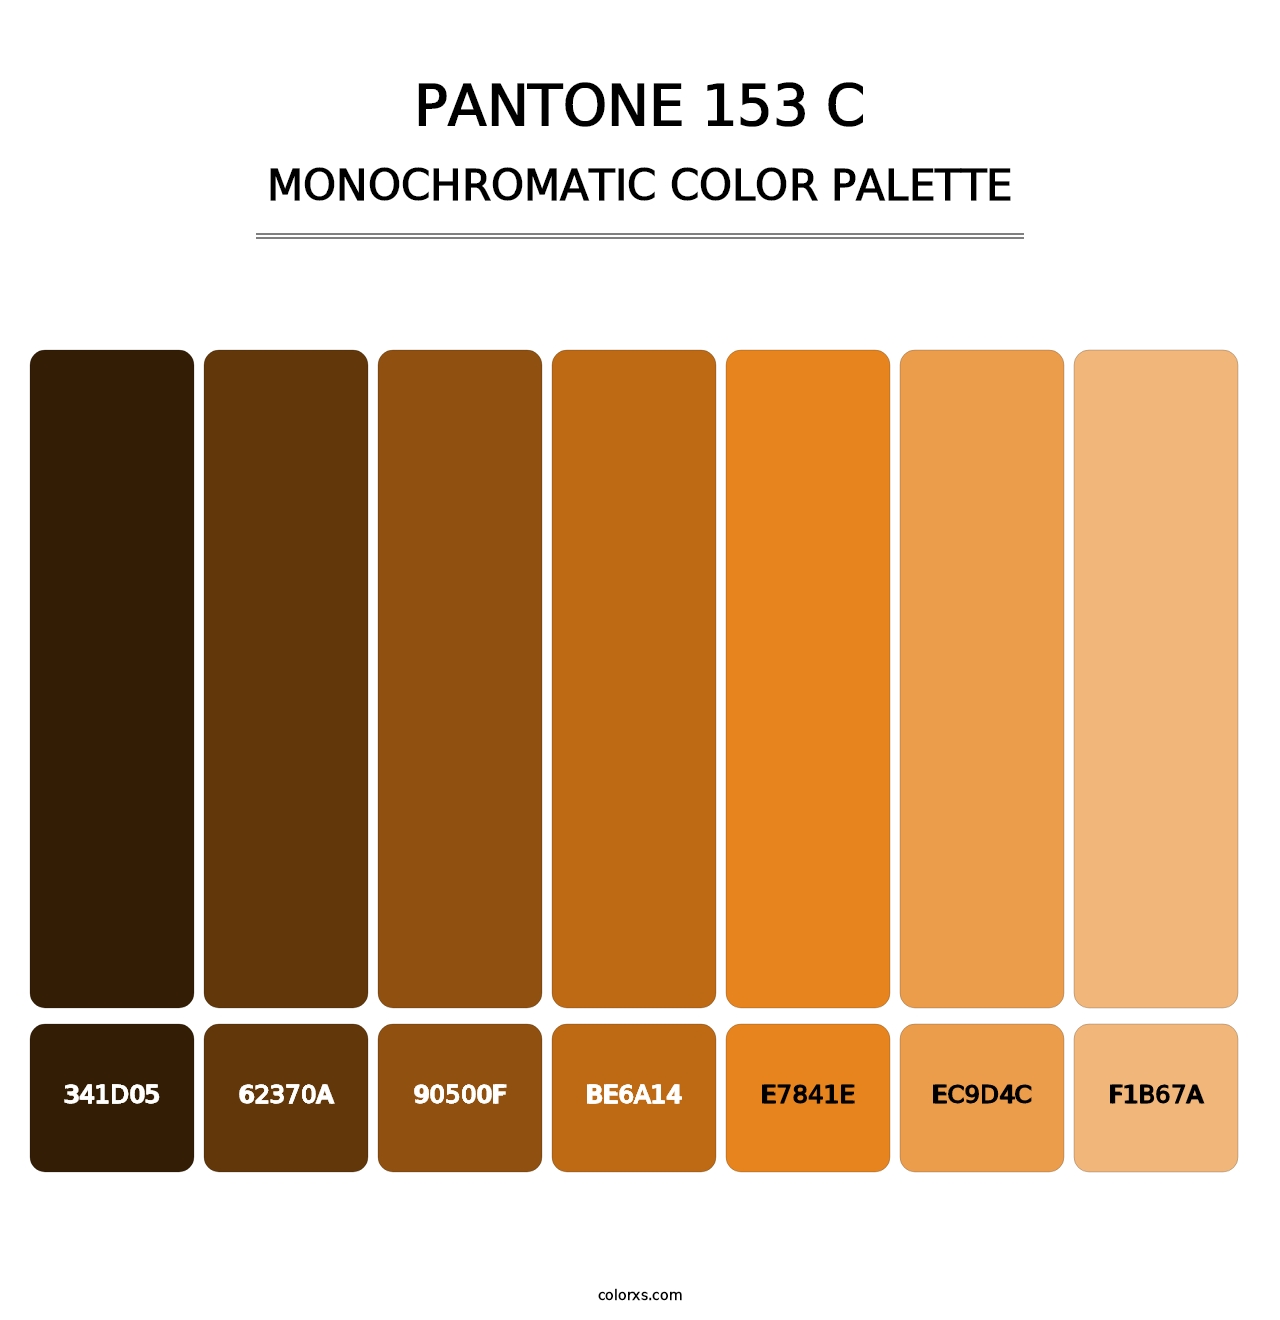 PANTONE 153 C - Monochromatic Color Palette